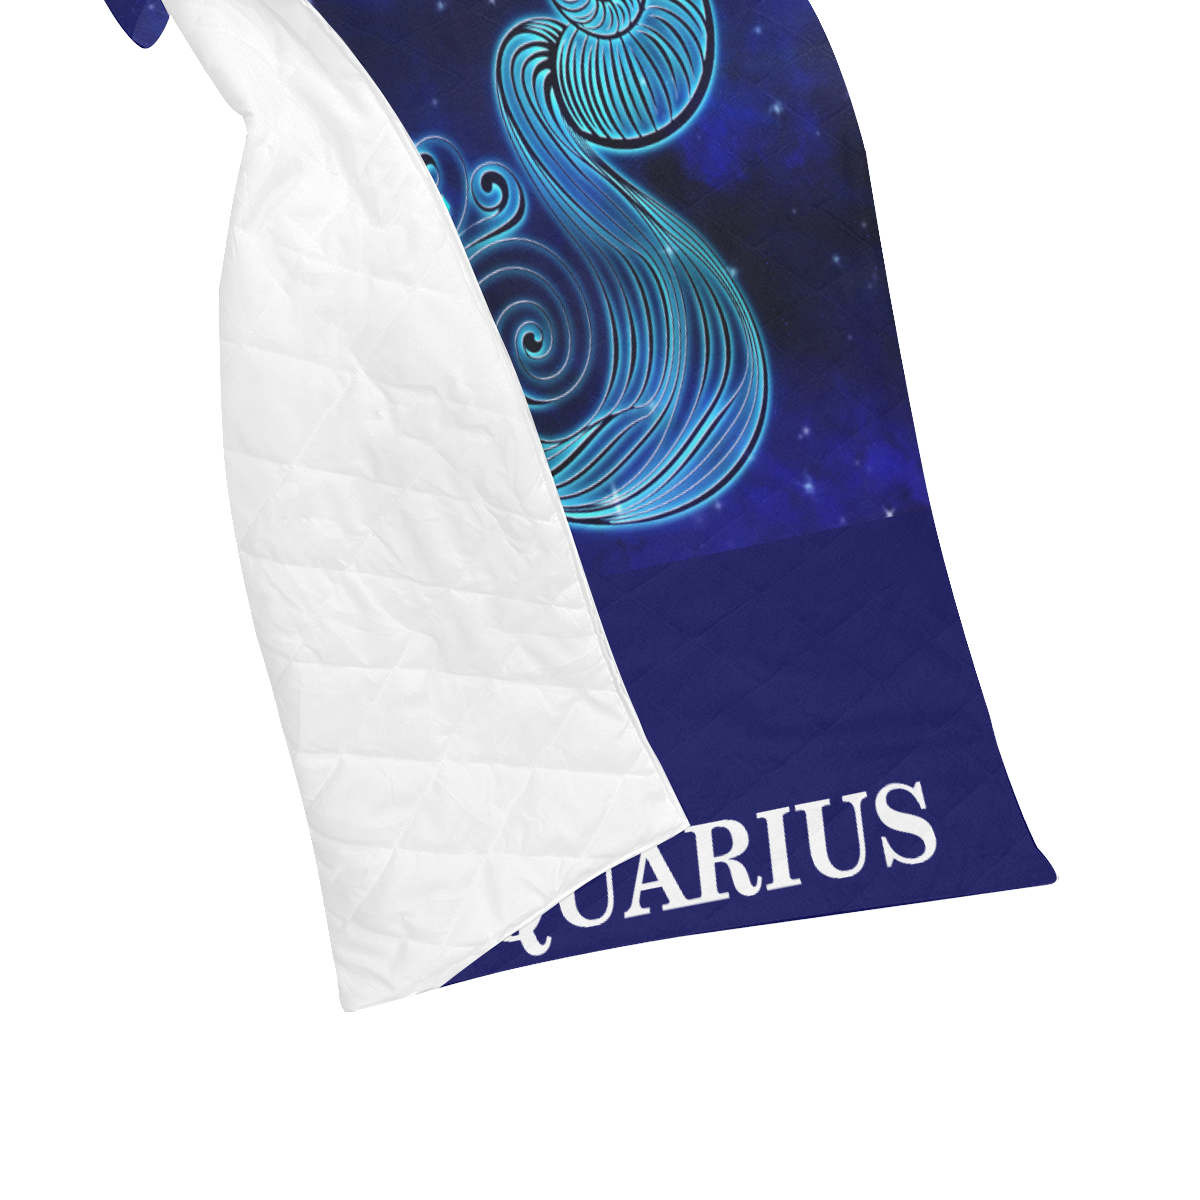 Aquarius design Quilt 40"x50"